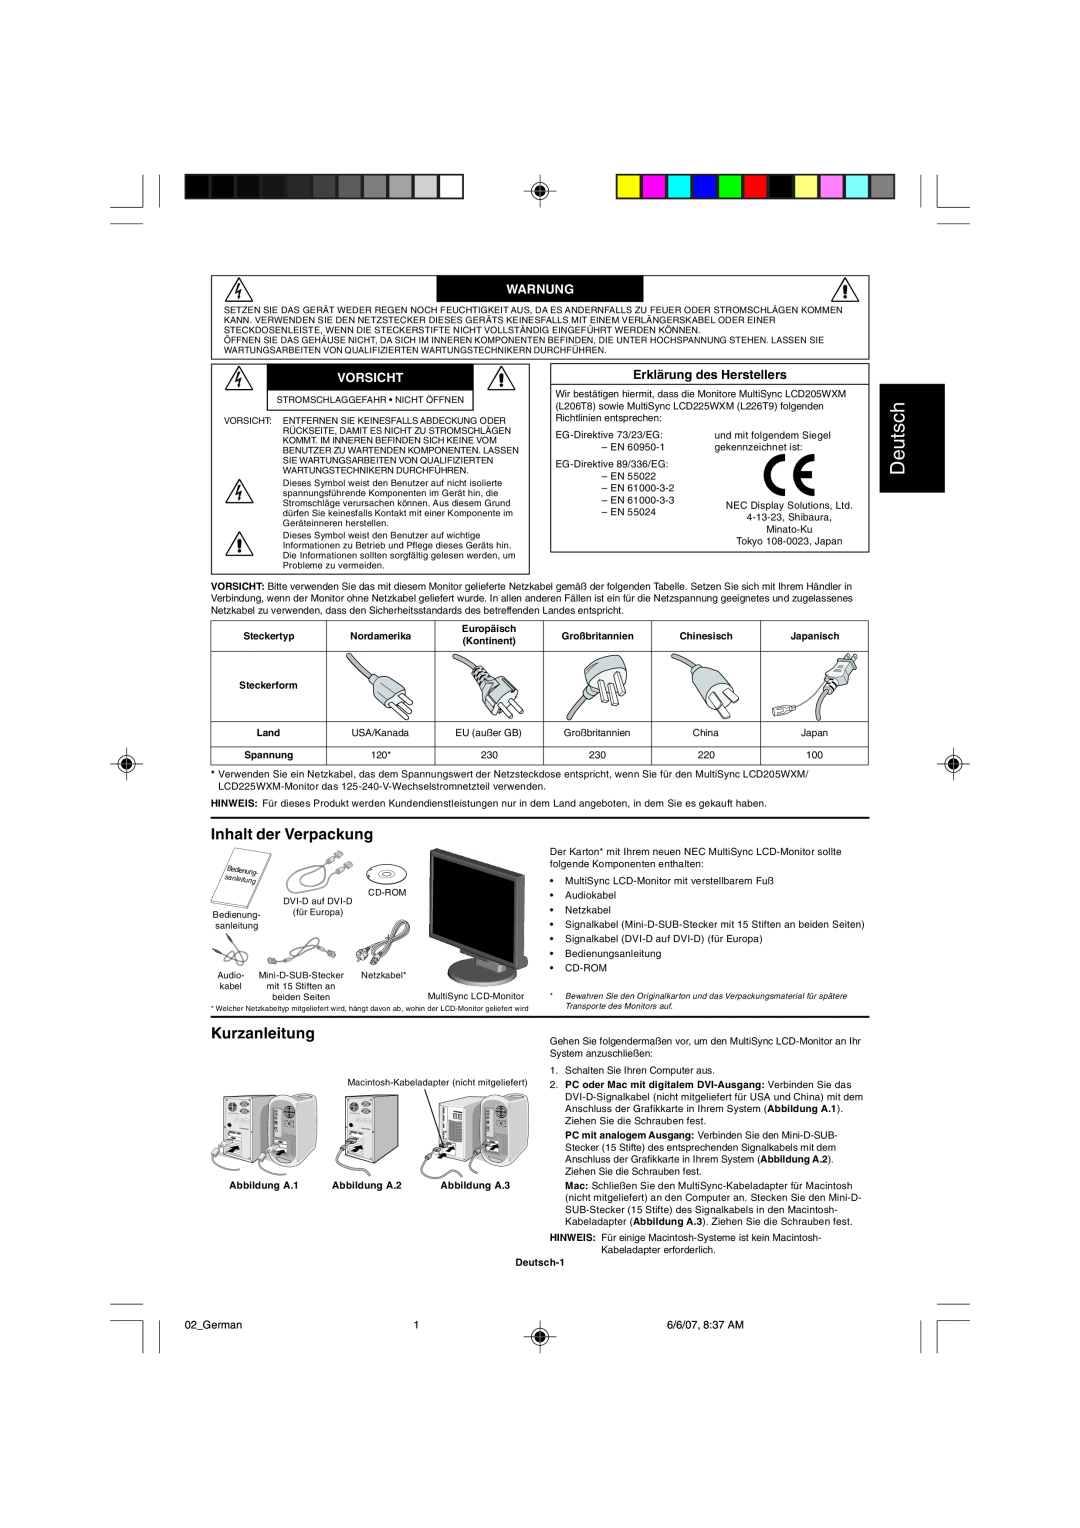 NEC LCD225WXM user manual Deutsch, Inhalt der Verpackung, Kurzanleitung, Warnung, Vorsicht, ErklŠrung des Herstellers 